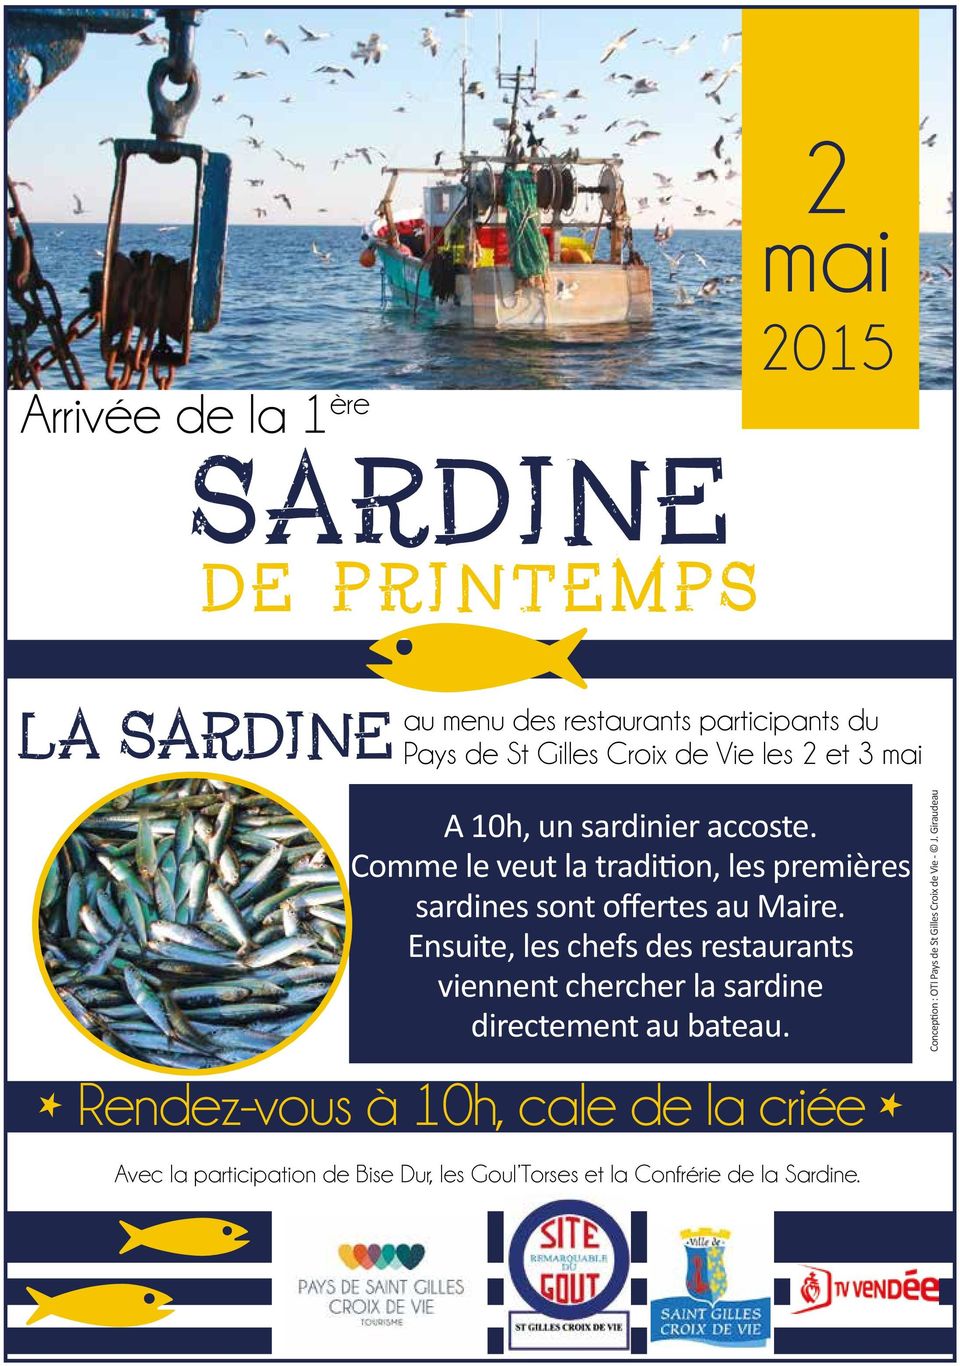 Ensuite, les chefs des restaurants viennent chercher la sardine directement au bateau.